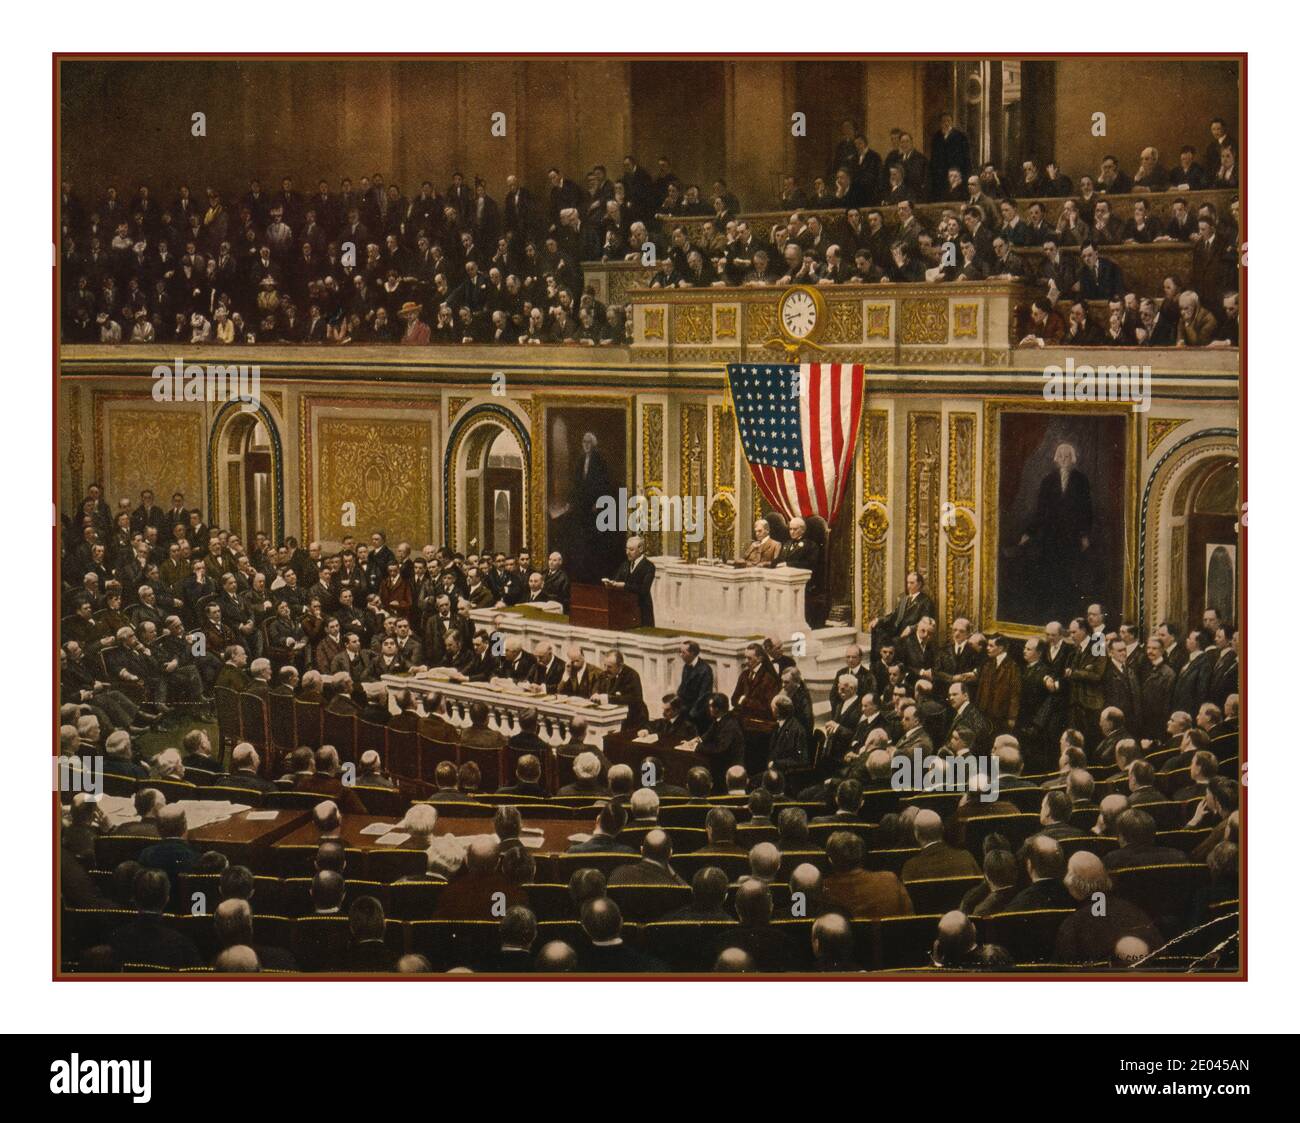 Archive USA WW1 Congrès américain "pour la liberté du monde" le président Woodrow Wilson demandant au Congrès de déclarer la guerre à l'Allemagne, 2 avril 1917. [1917], c1918 décembre 21. Wilson, Woodrow,--1856-1924 - Guerre mondiale, 1914-1918--Communications--Washington D.C., États-Unis Banque D'Images